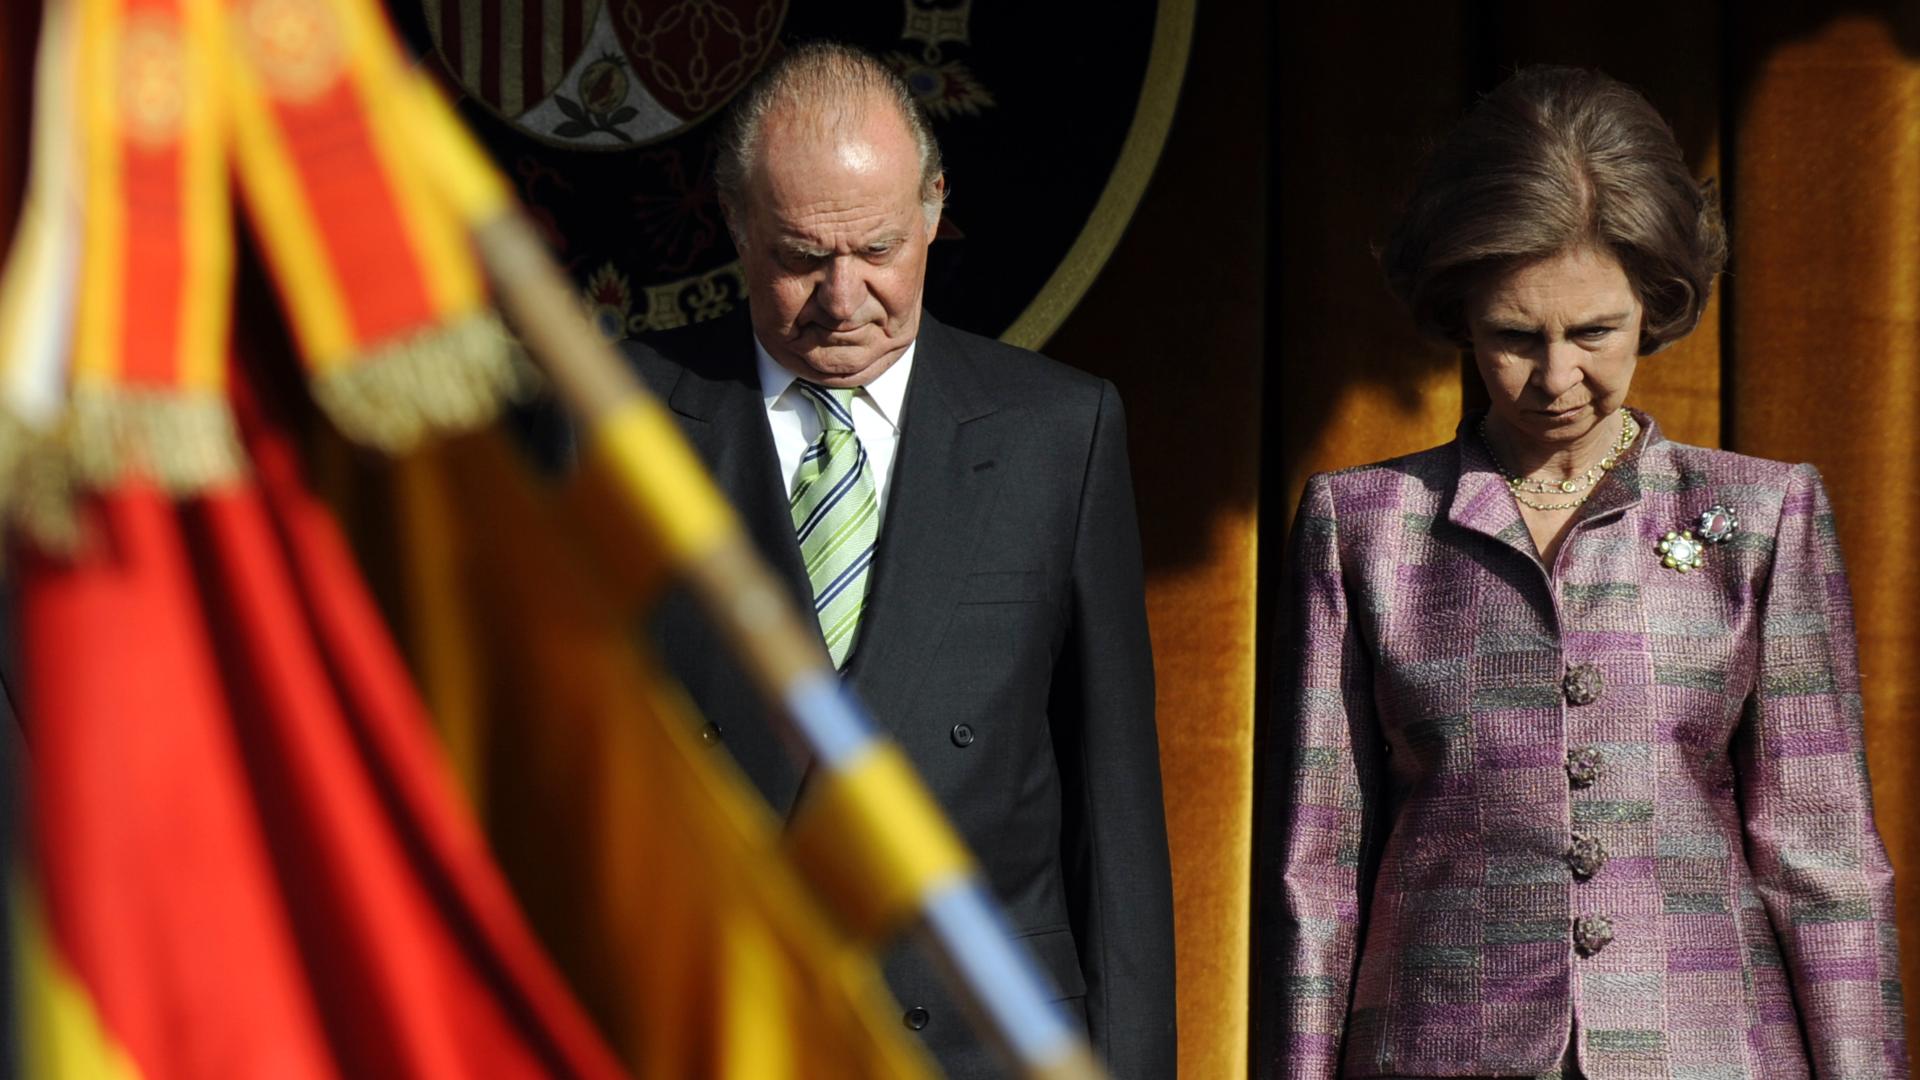 Así recoge la prensa internacional el anuncio del rey Juan Carlos de abandonar España